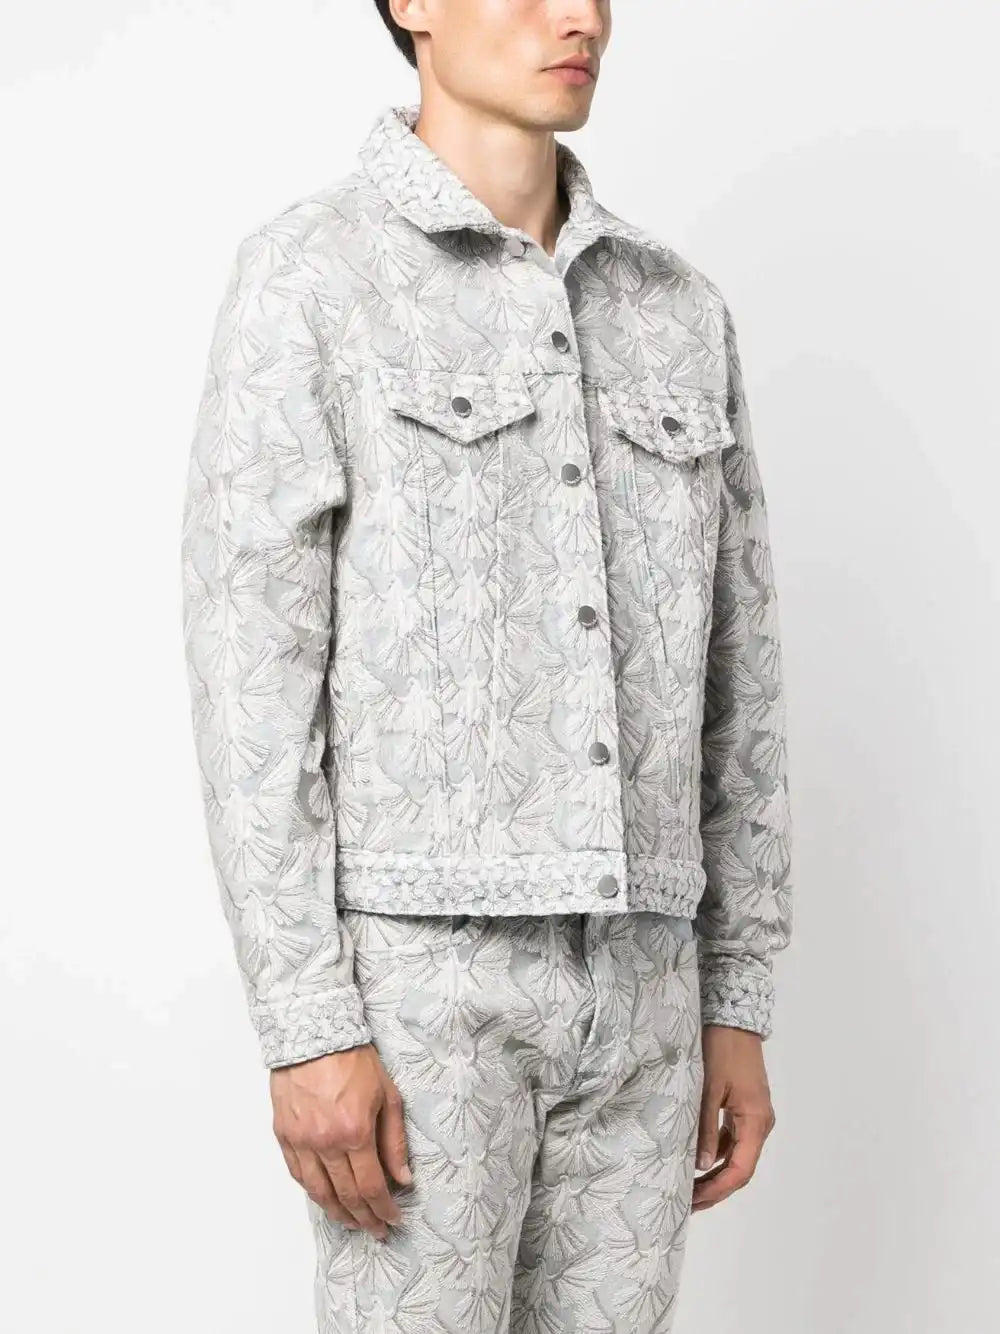 LOUIS VUITTON Monogram Pijama Type Shirt